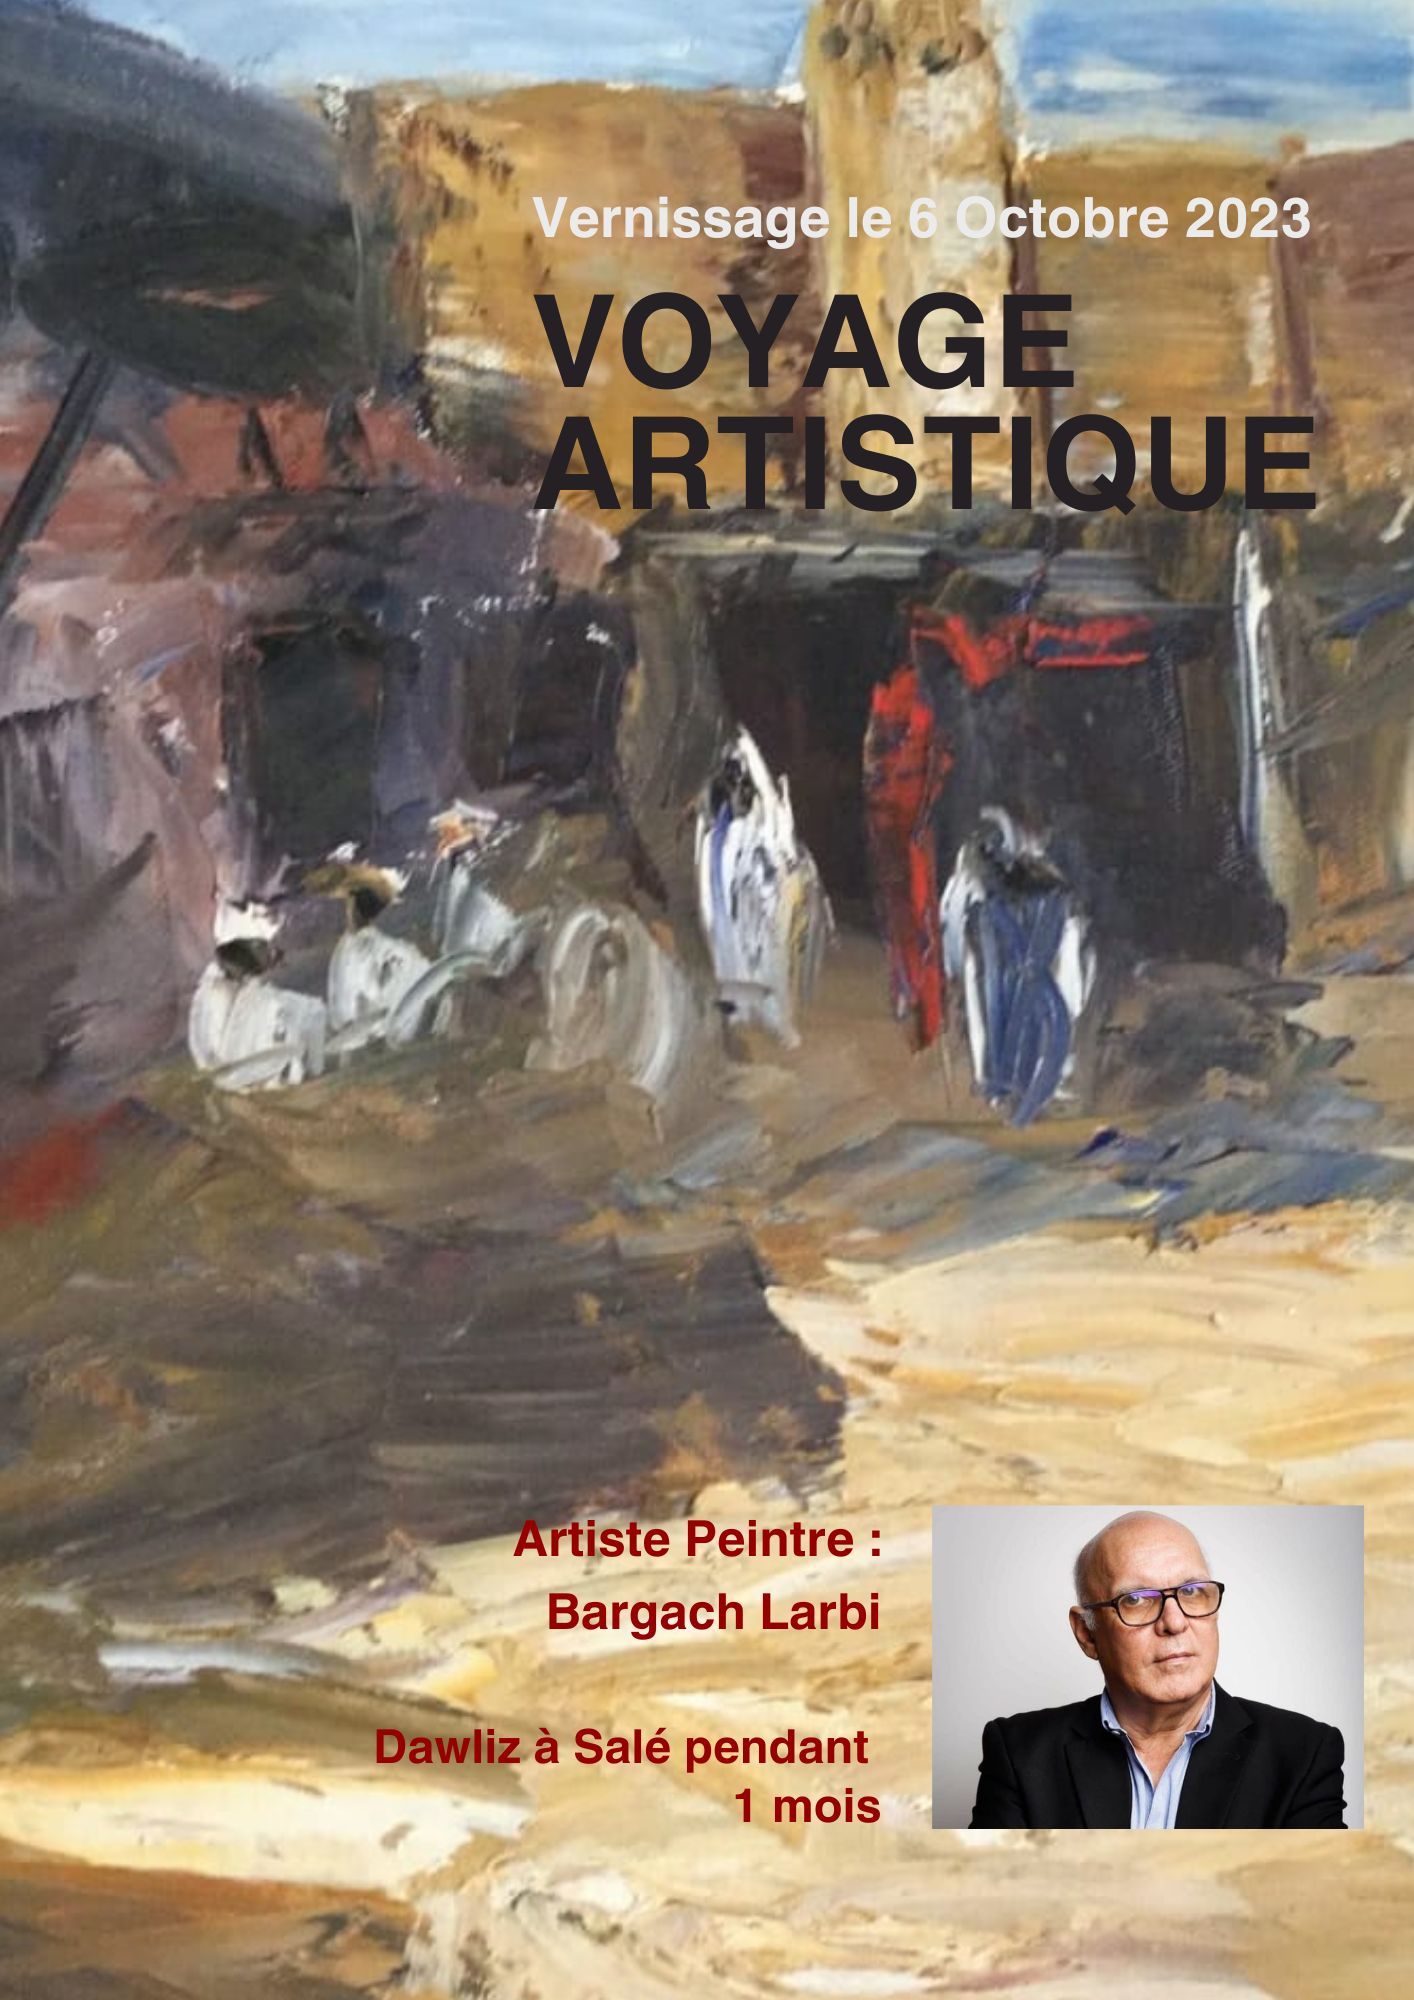 Exposition "Voyage artistique" de l'artiste peintre Bargach Larbi